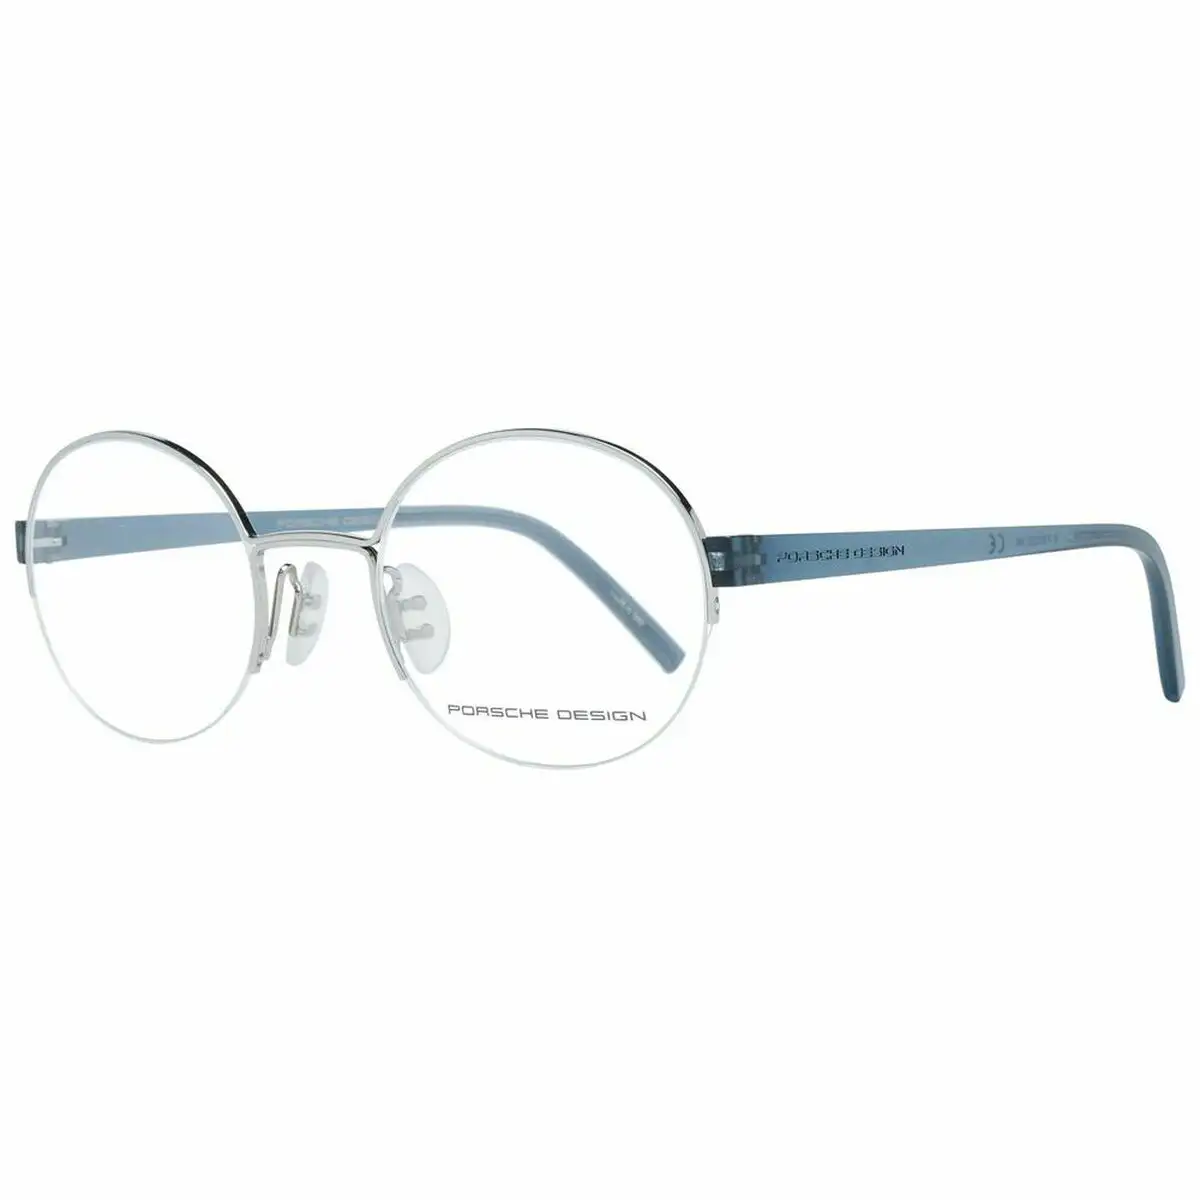 Monture de lunettes unisexe porsche p8350 50b_6313. DIAYTAR SENEGAL - Là où Chaque Produit est une Trouvaille Unique. Découvrez notre boutique en ligne et trouvez des articles qui vous distinguent par leur originalité.